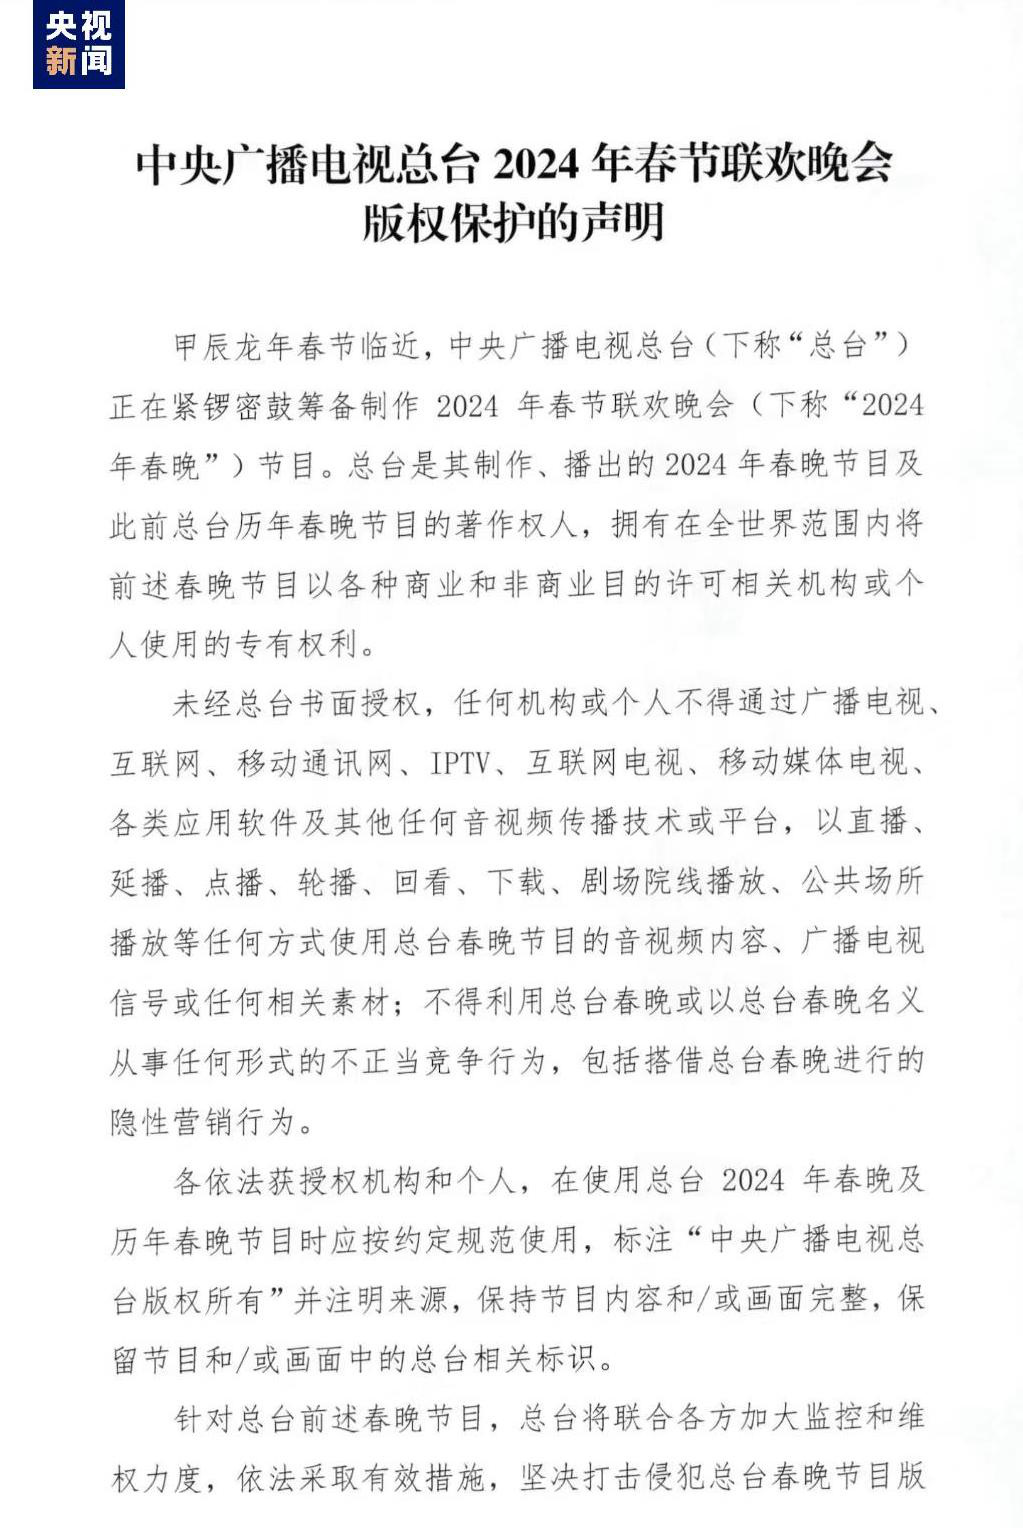 中央广播电视总台2024年春节联欢晚会版权声明